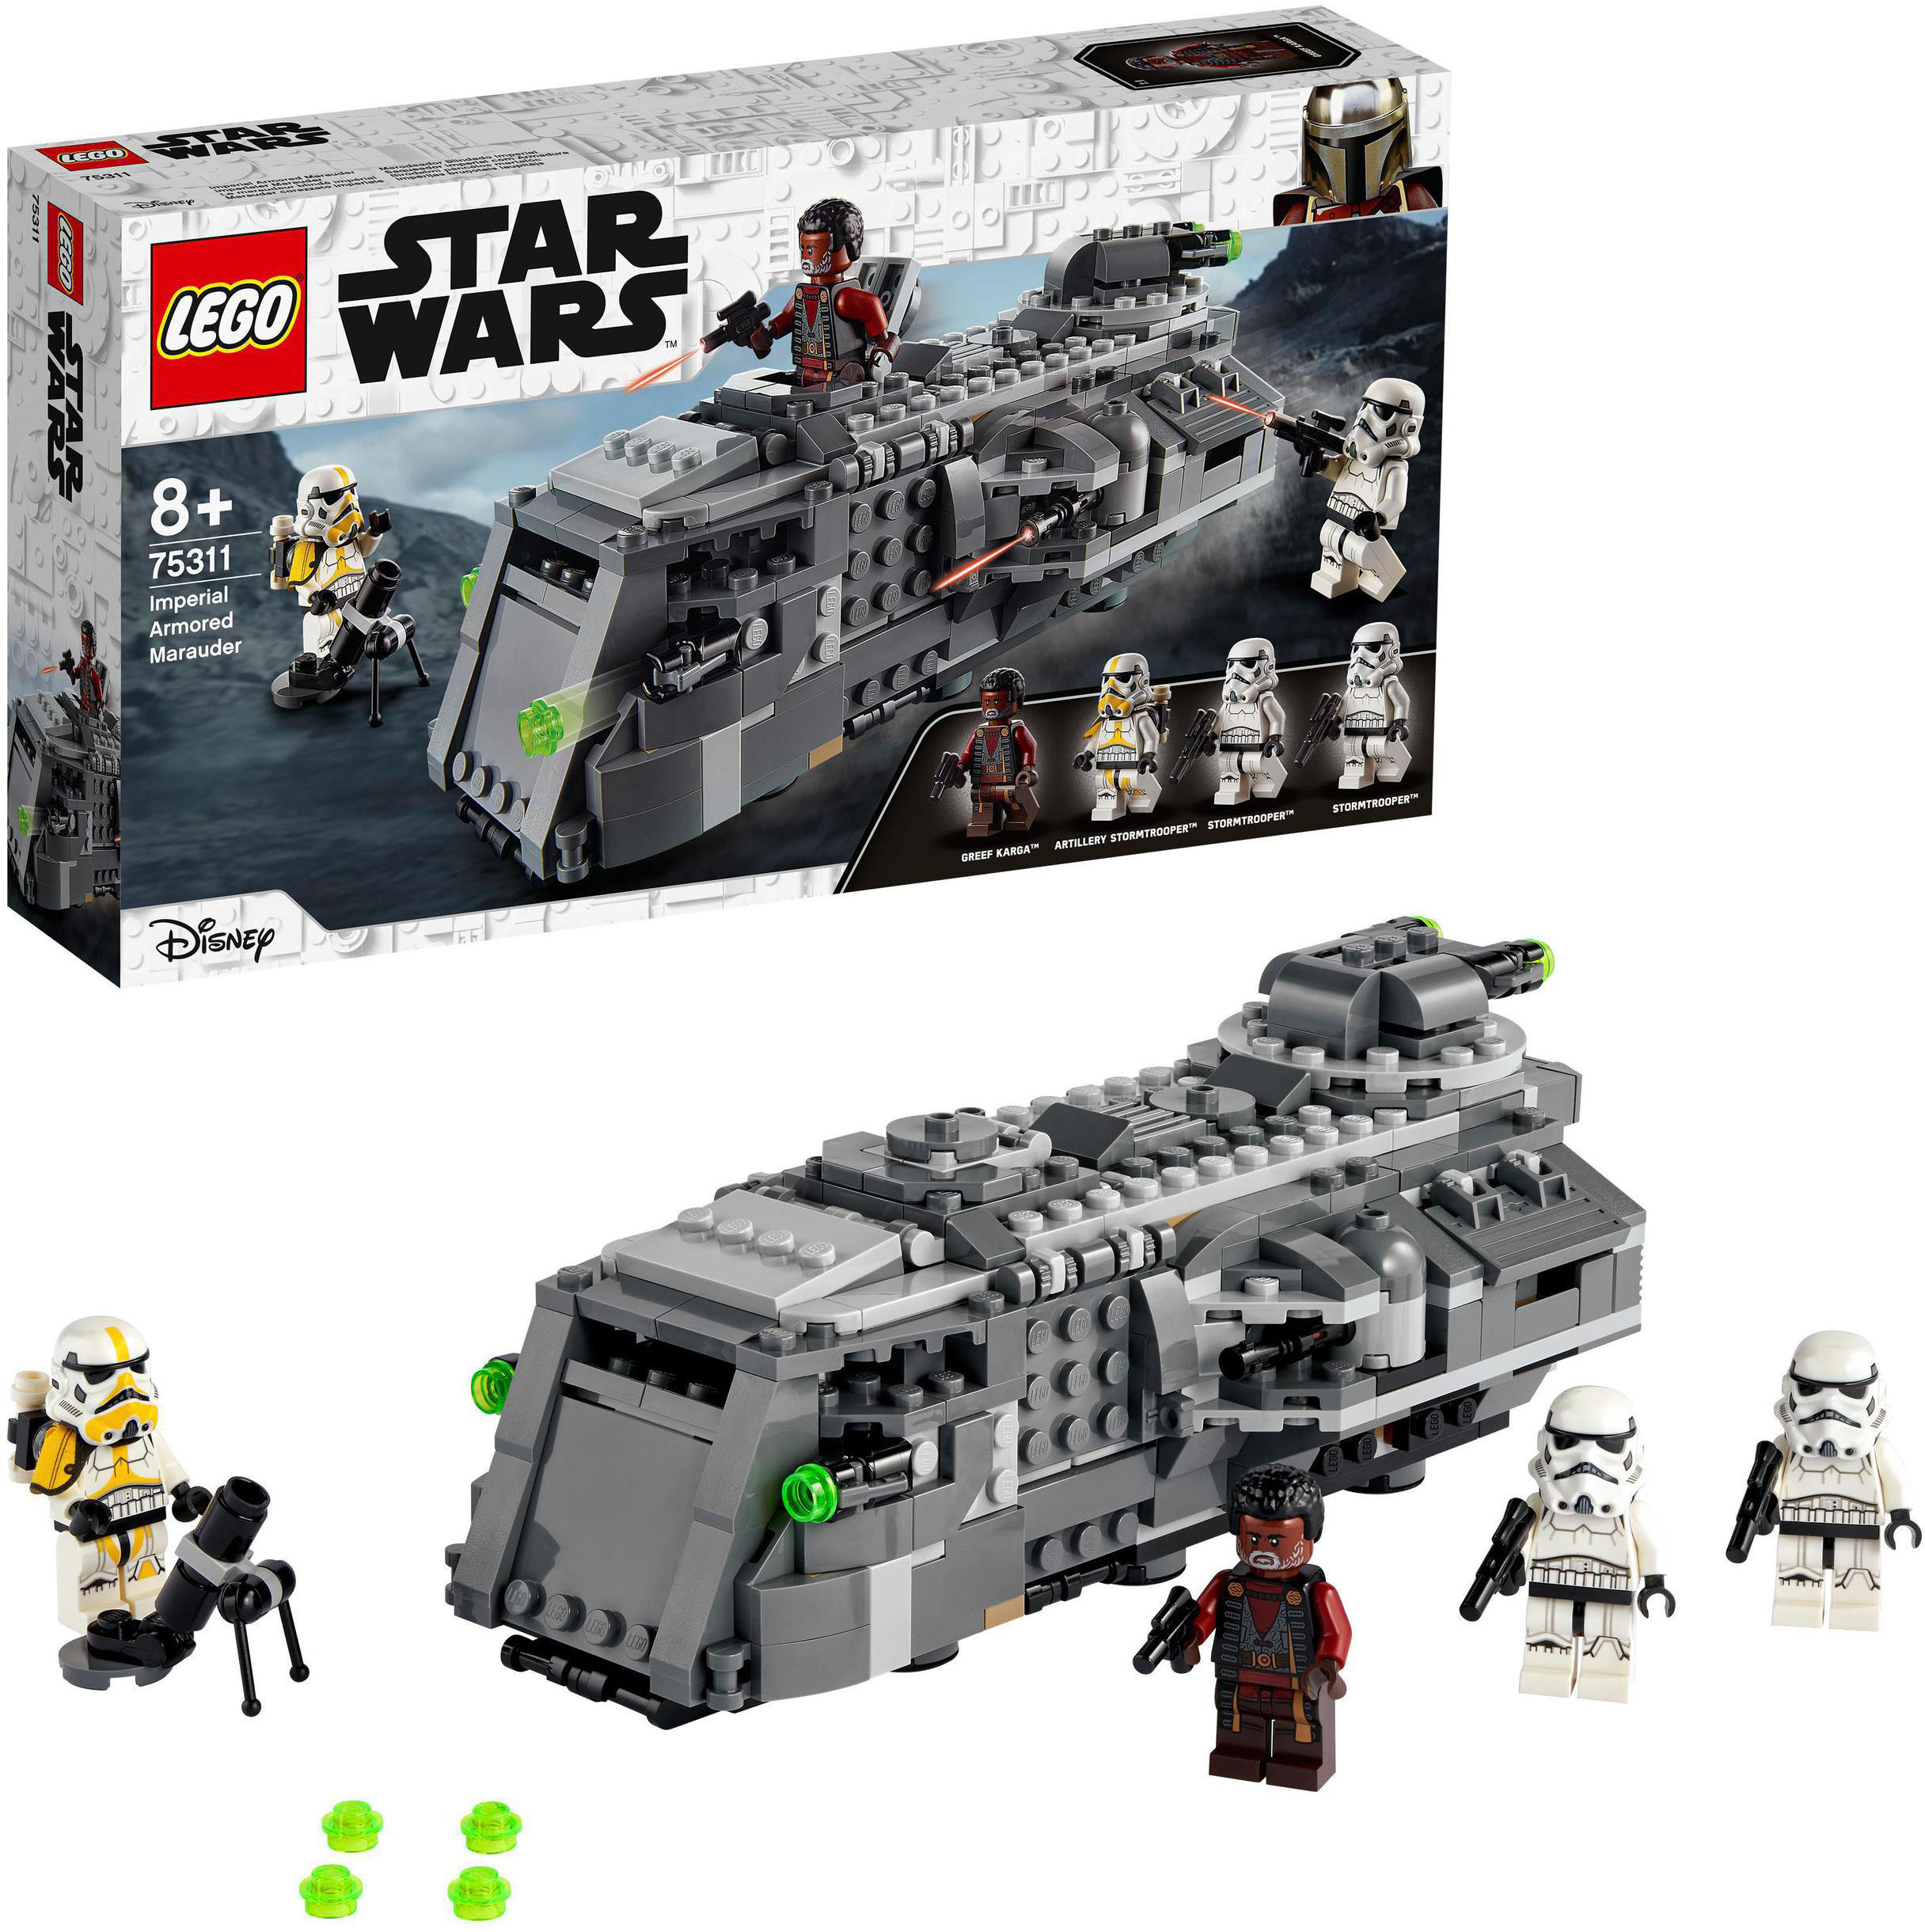 LEGO Konstruktionsspielsteine Imperialer Marauder (75311), LEGO Star Wars™ Mandalorian, (478 St.), Made in Europe